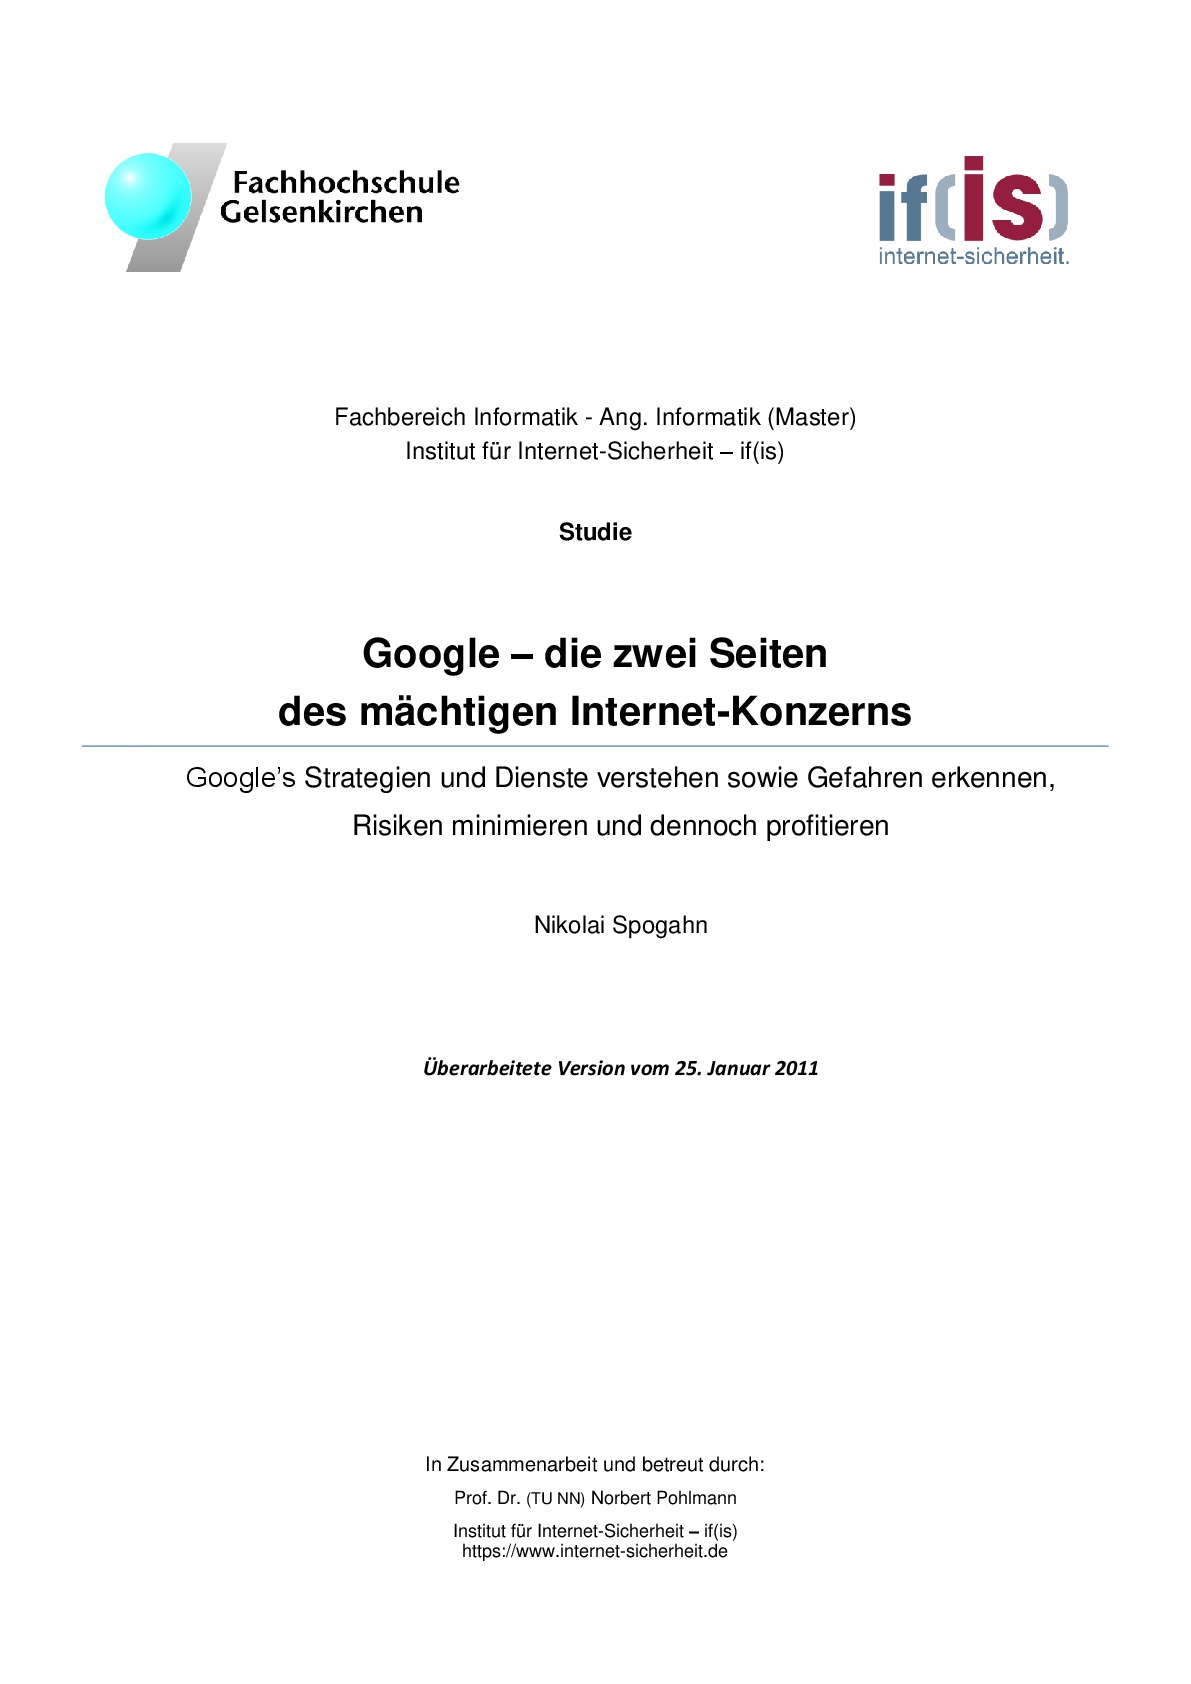 Google - die zwei Seiten des mächtigen Internet-Konzerns - Prof. Norbert Pohlmann-1-1-001